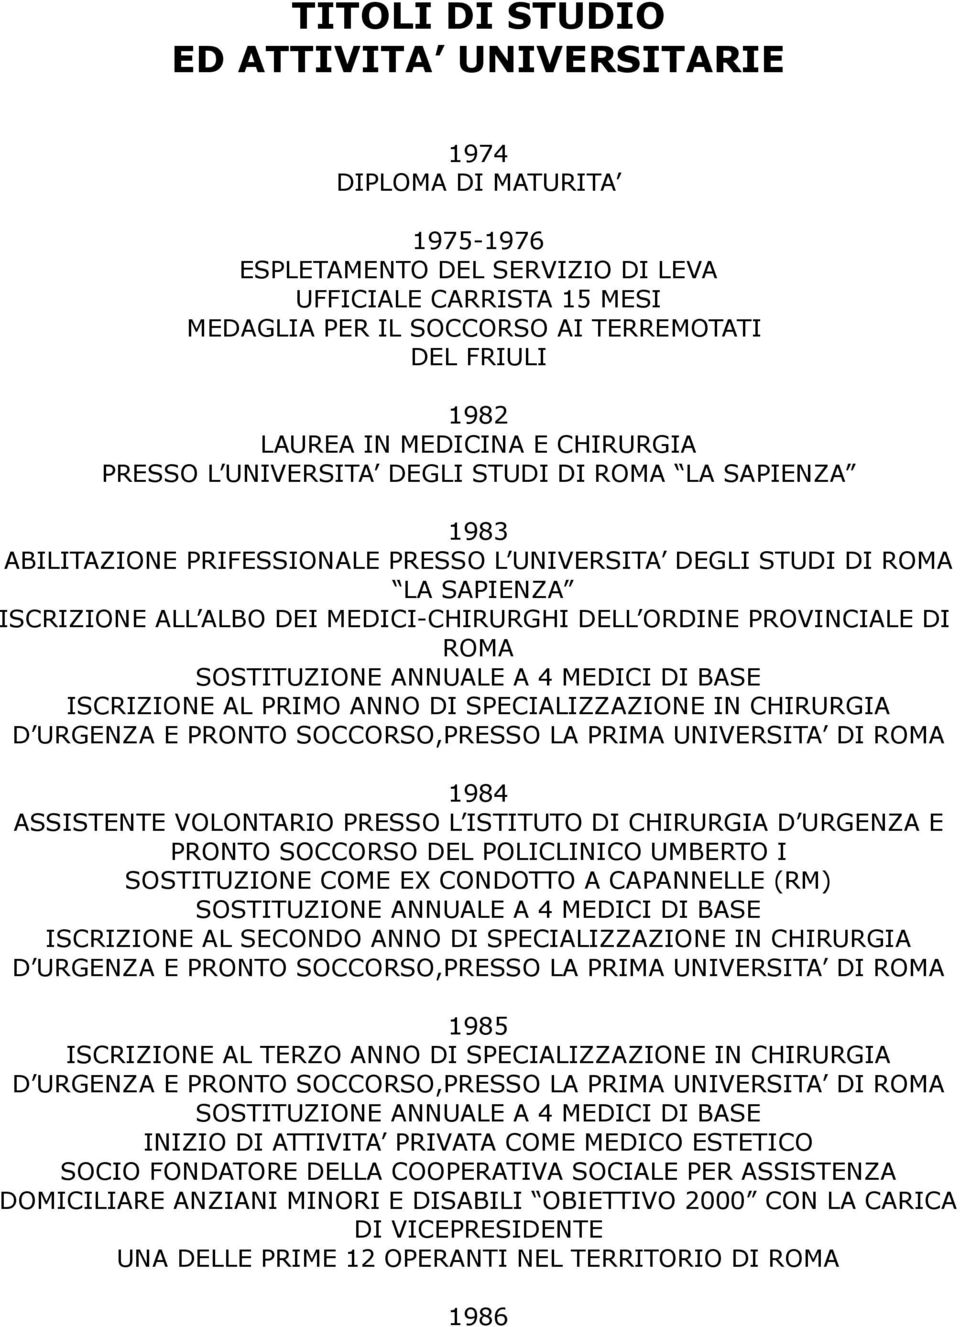 MEDICI-CHIRURGHI DELL ORDINE PROVINCIALE DI ROMA ISCRIZIONE AL PRIMO ANNO DI SPECIALIZZAZIONE IN CHIRURGIA 1984 ASSISTENTE VOLONTARIO PRESSO L ISTITUTO DI CHIRURGIA D URGENZA E PRONTO SOCCORSO DEL